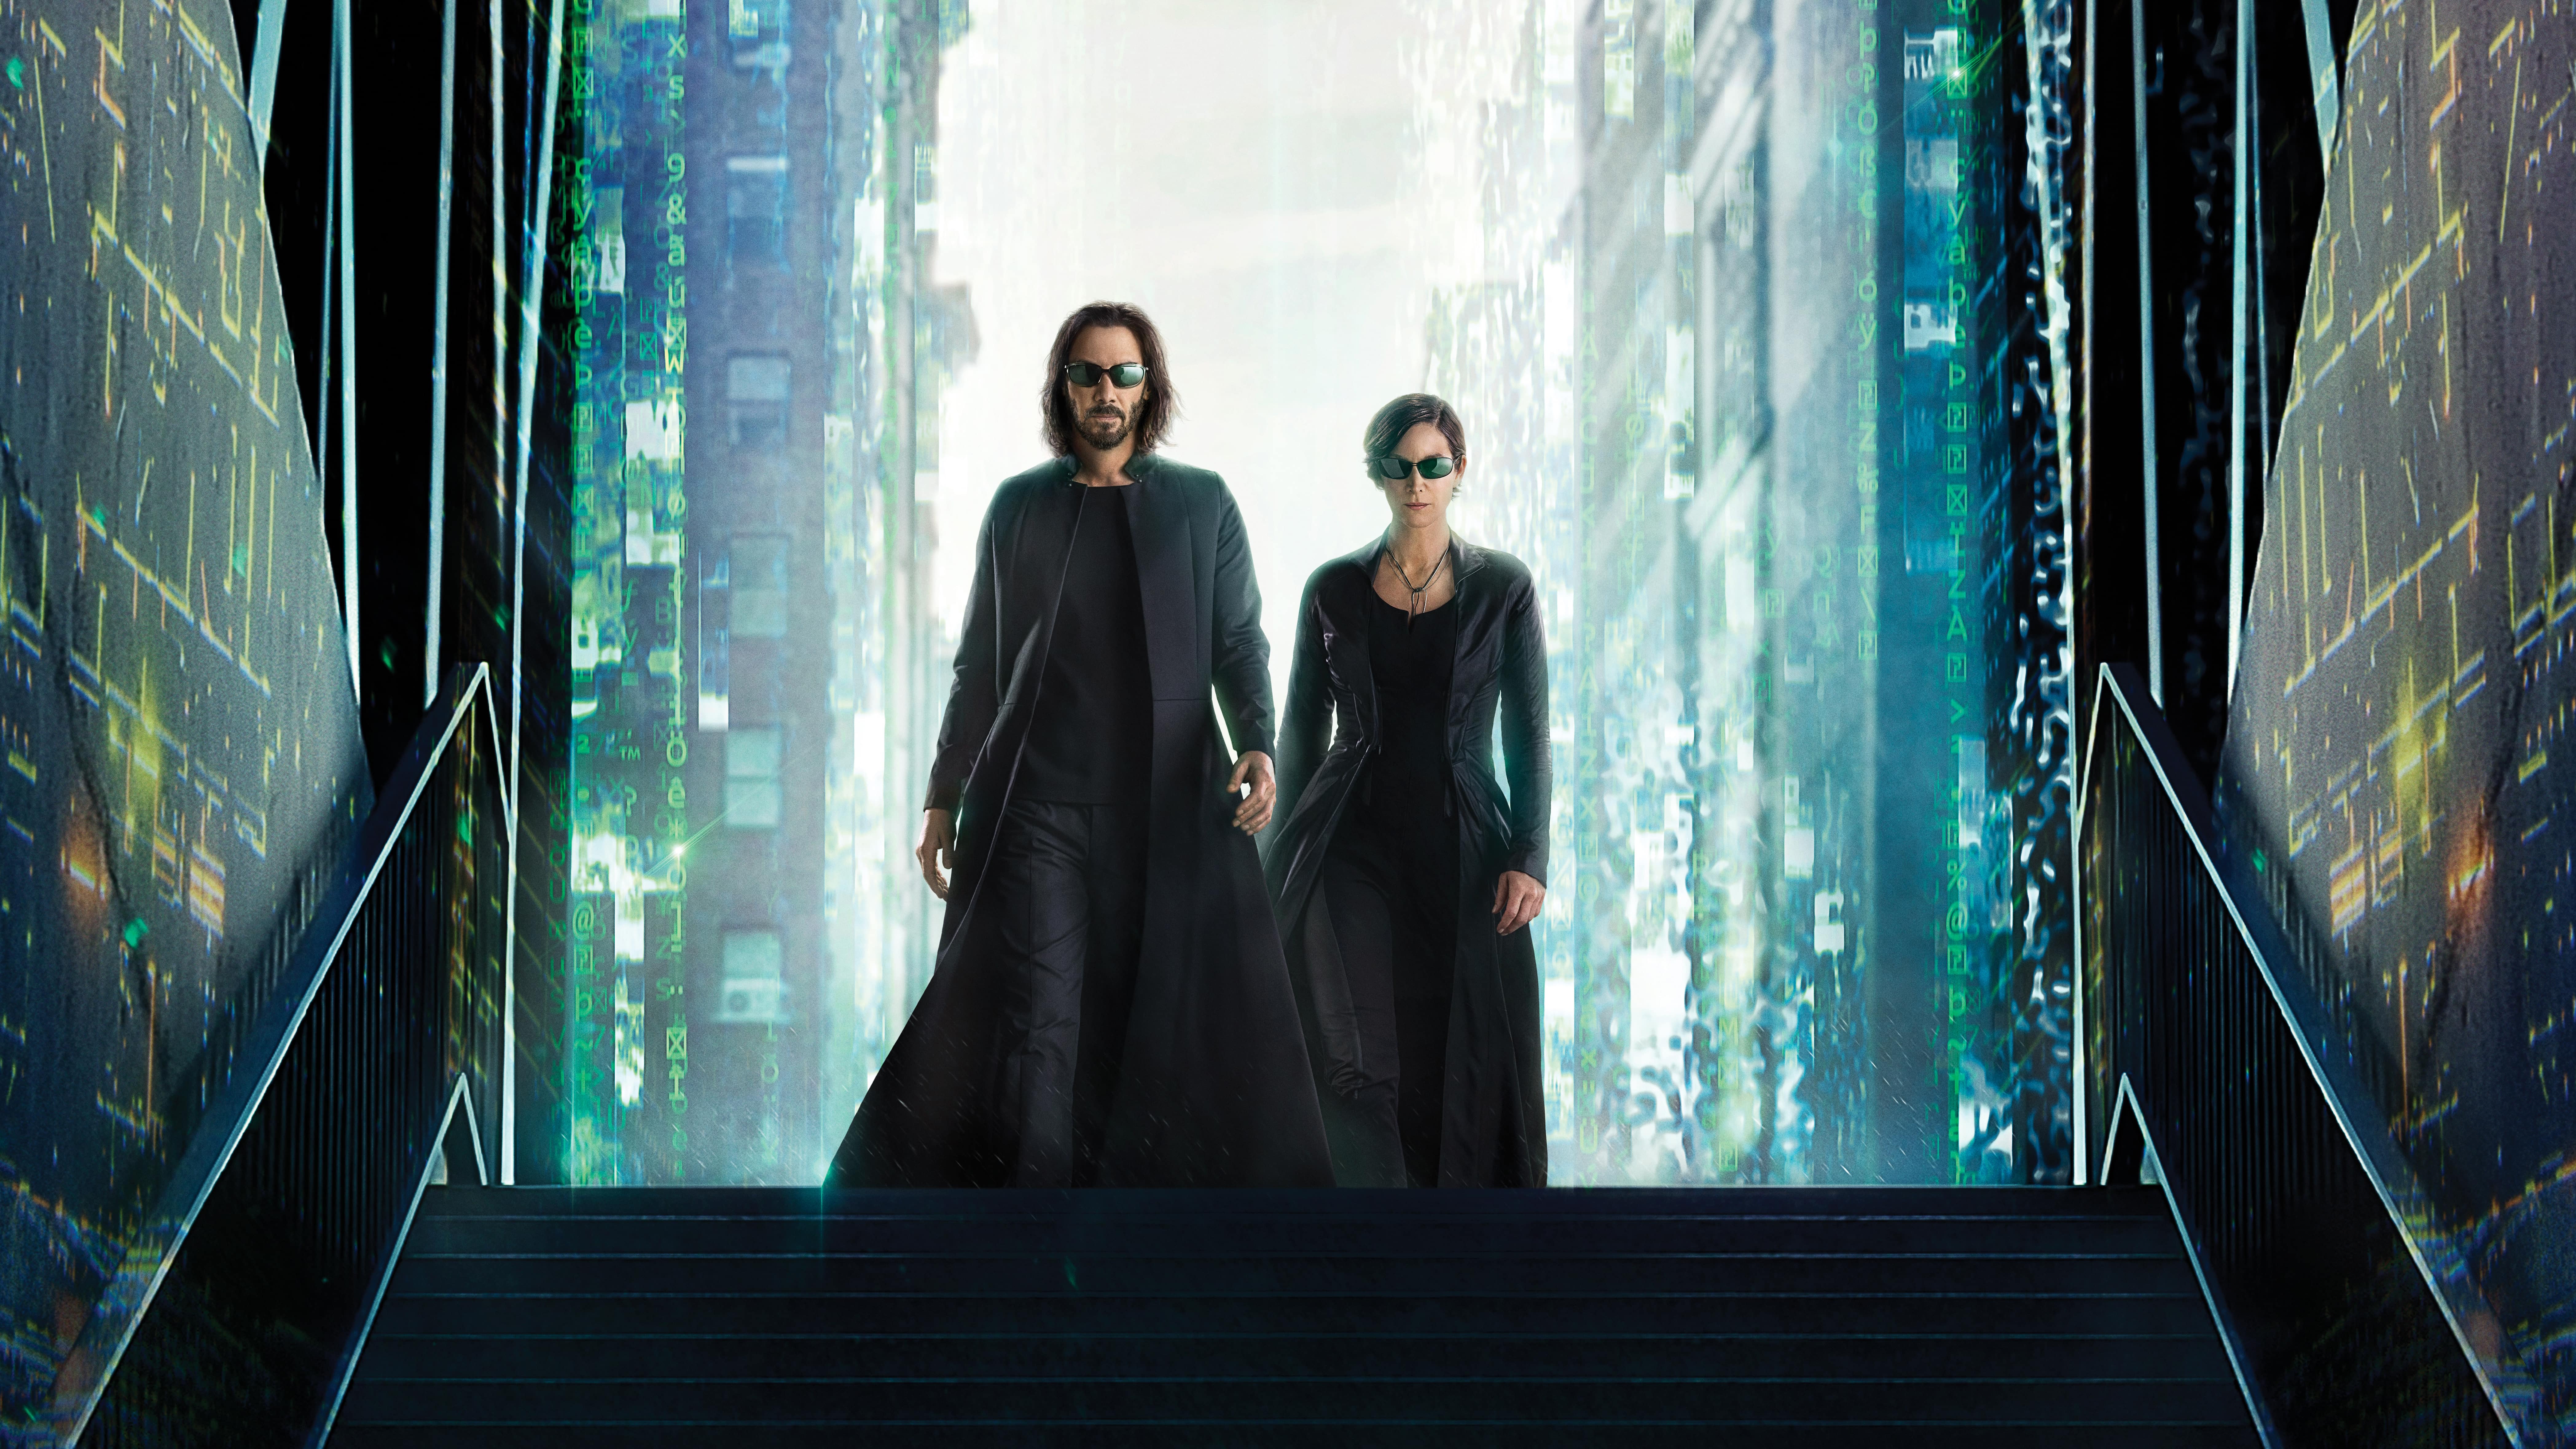 Fondos de pantalla The Matrix 4